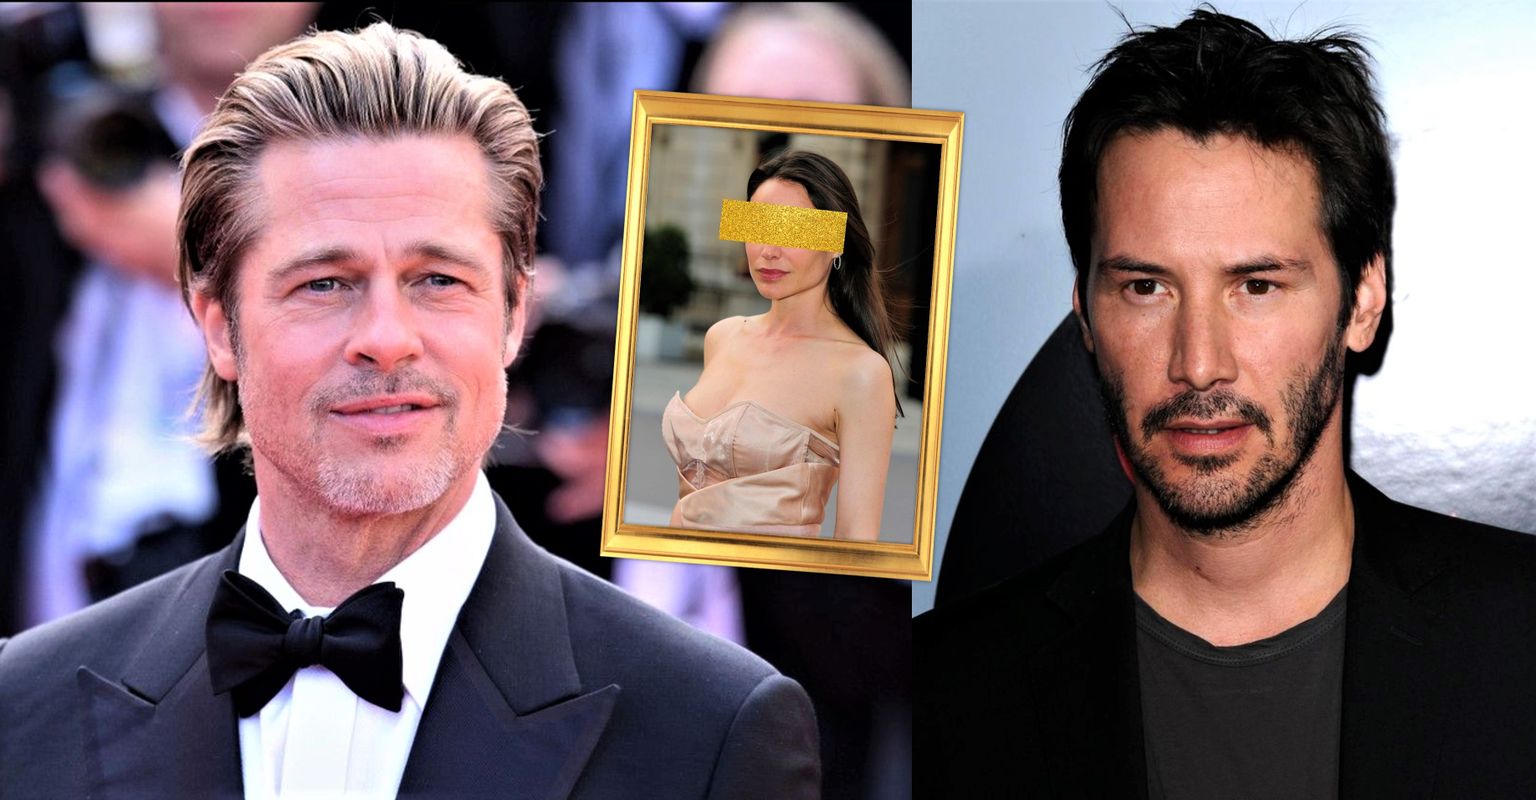 Postimees Naine kollaaž. Vasakul Brad Pitt, keskel müstiline kaunitar ja paremal Keanu Reeves.